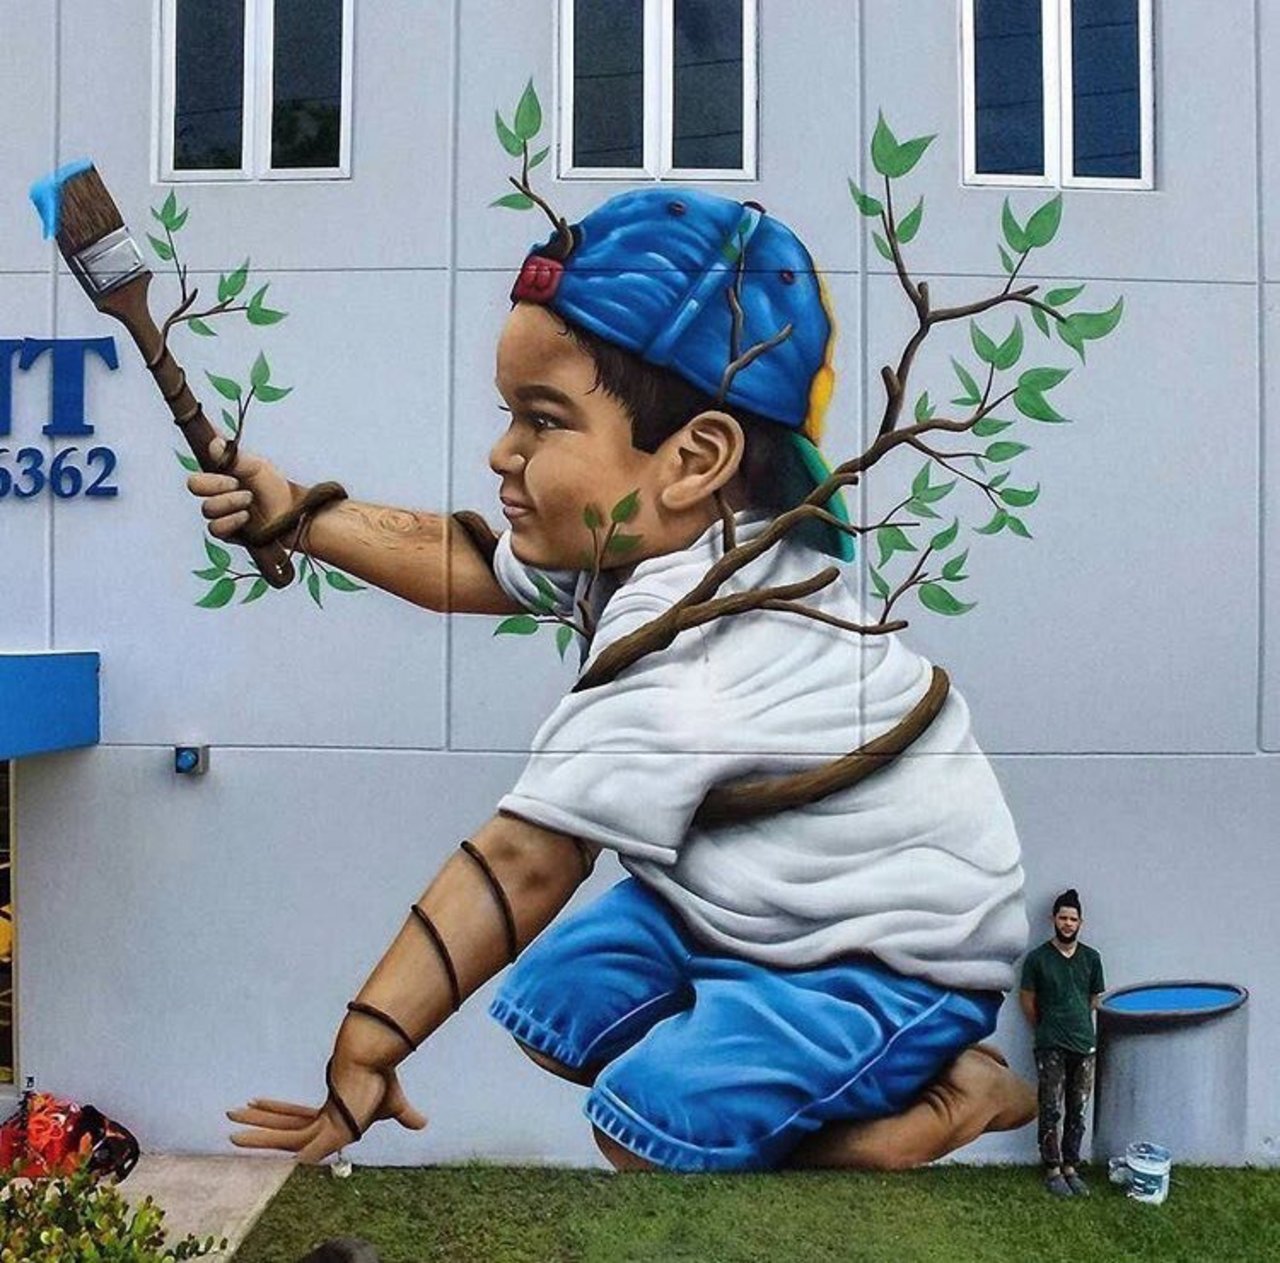 #mural by Smite #PuertoRico #art #graffiti #streetart https://t.co/GX2vK5Wgtw